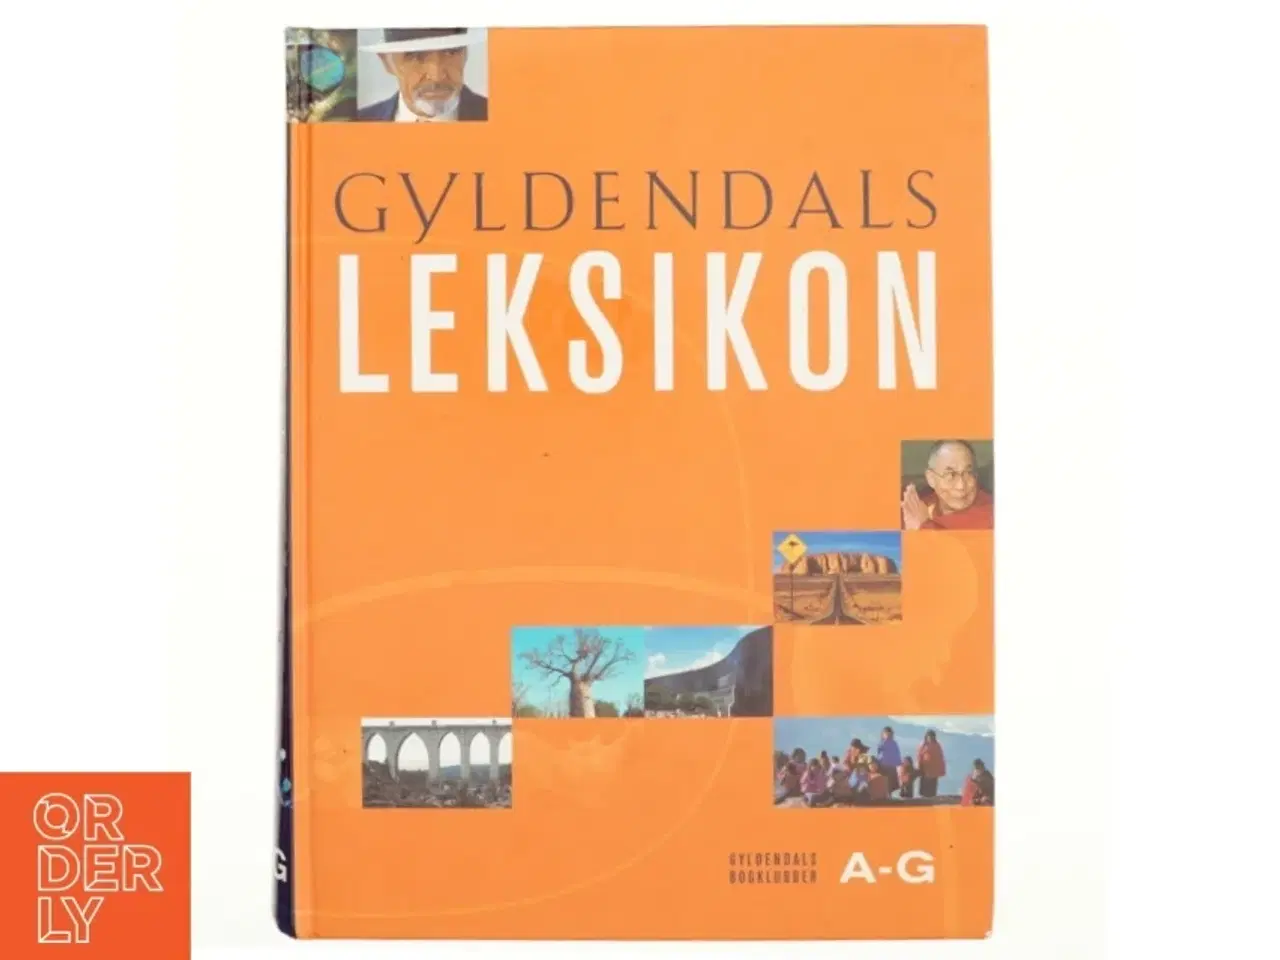 Billede 1 - Gyldendalss Leksikon A-G af Gyldendal (Bog)